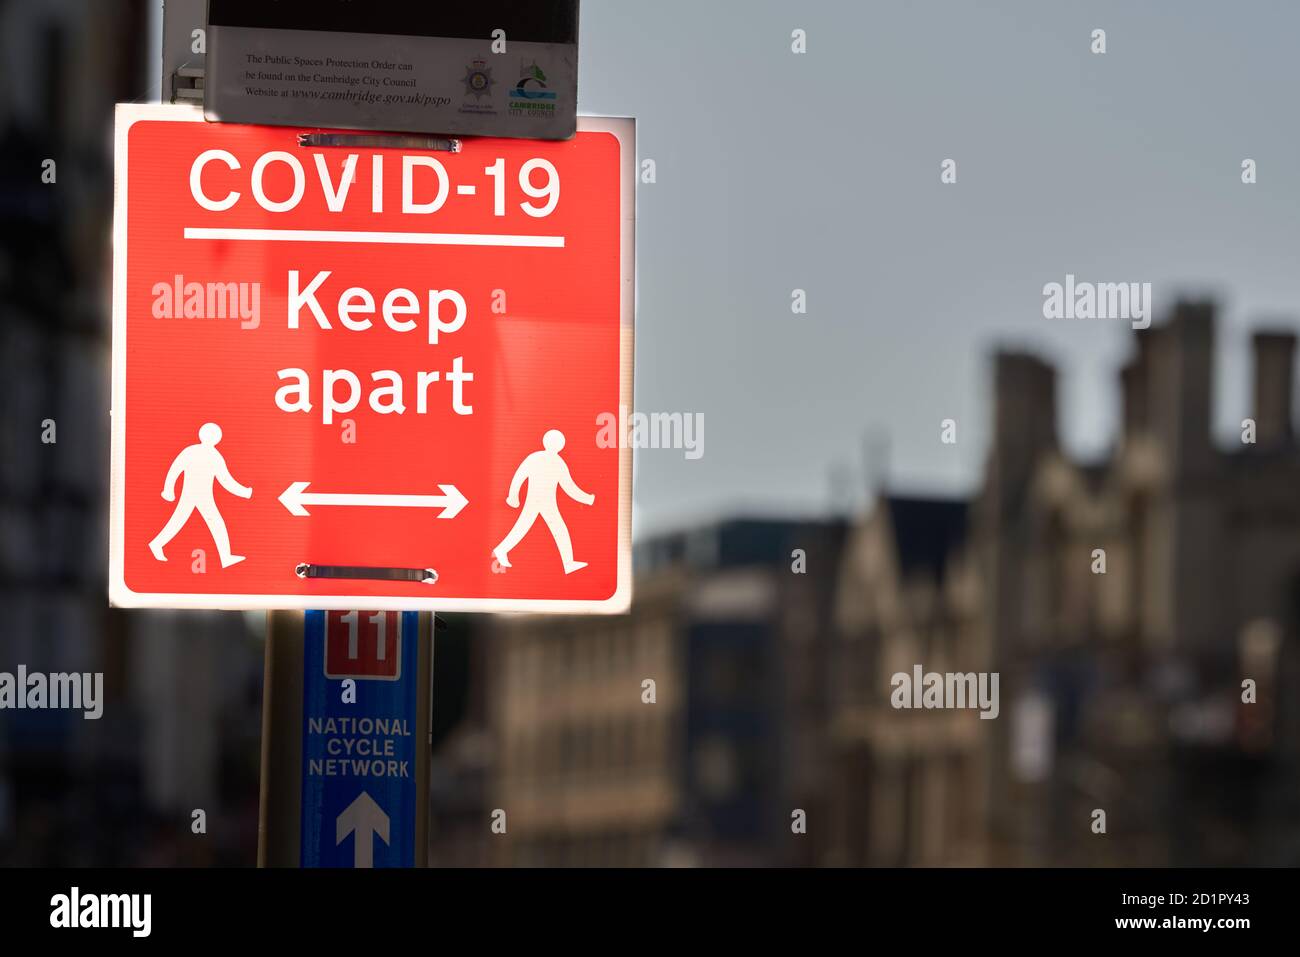 Hinweis auf einem Beitrag in Cambridge, England, über die Aufrechterhaltung eines sicheren sozialen Abstand von 2m aufgrund der Coronavirus-Epidemie, September 2020. Stockfoto